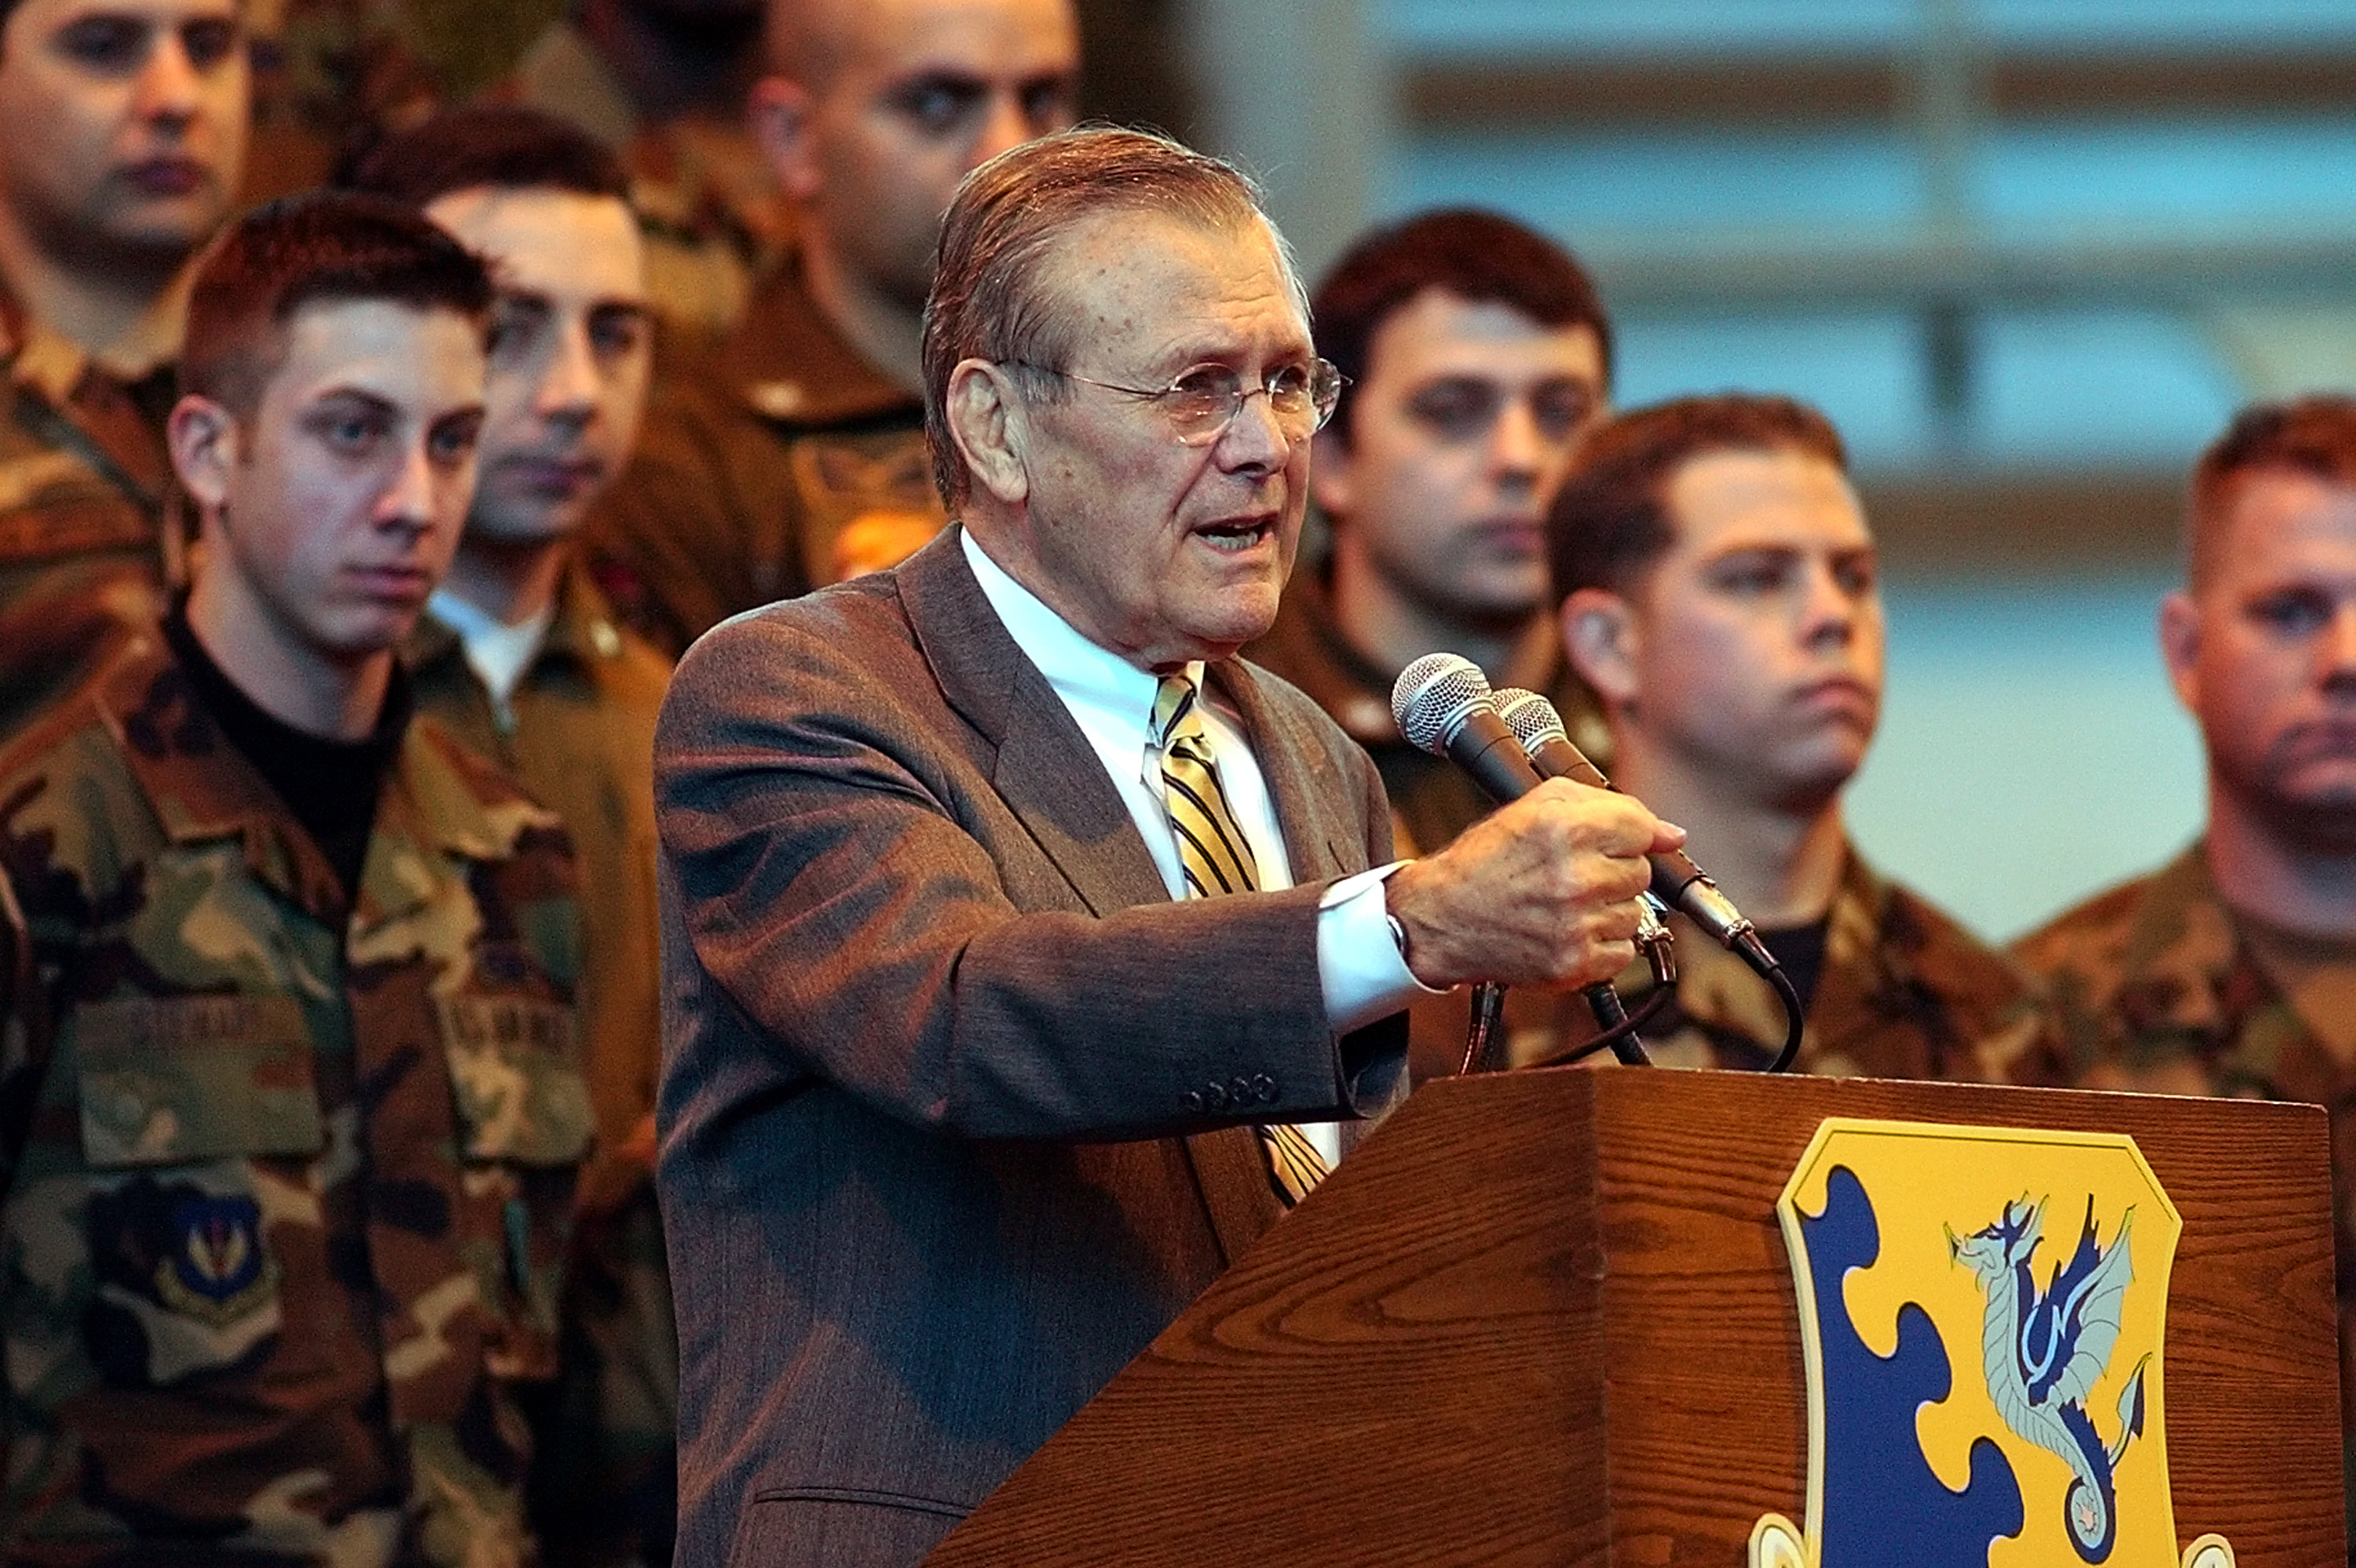 U.S. Defense Secretary Donald Rumsfeld Speaks To Troops In Italy